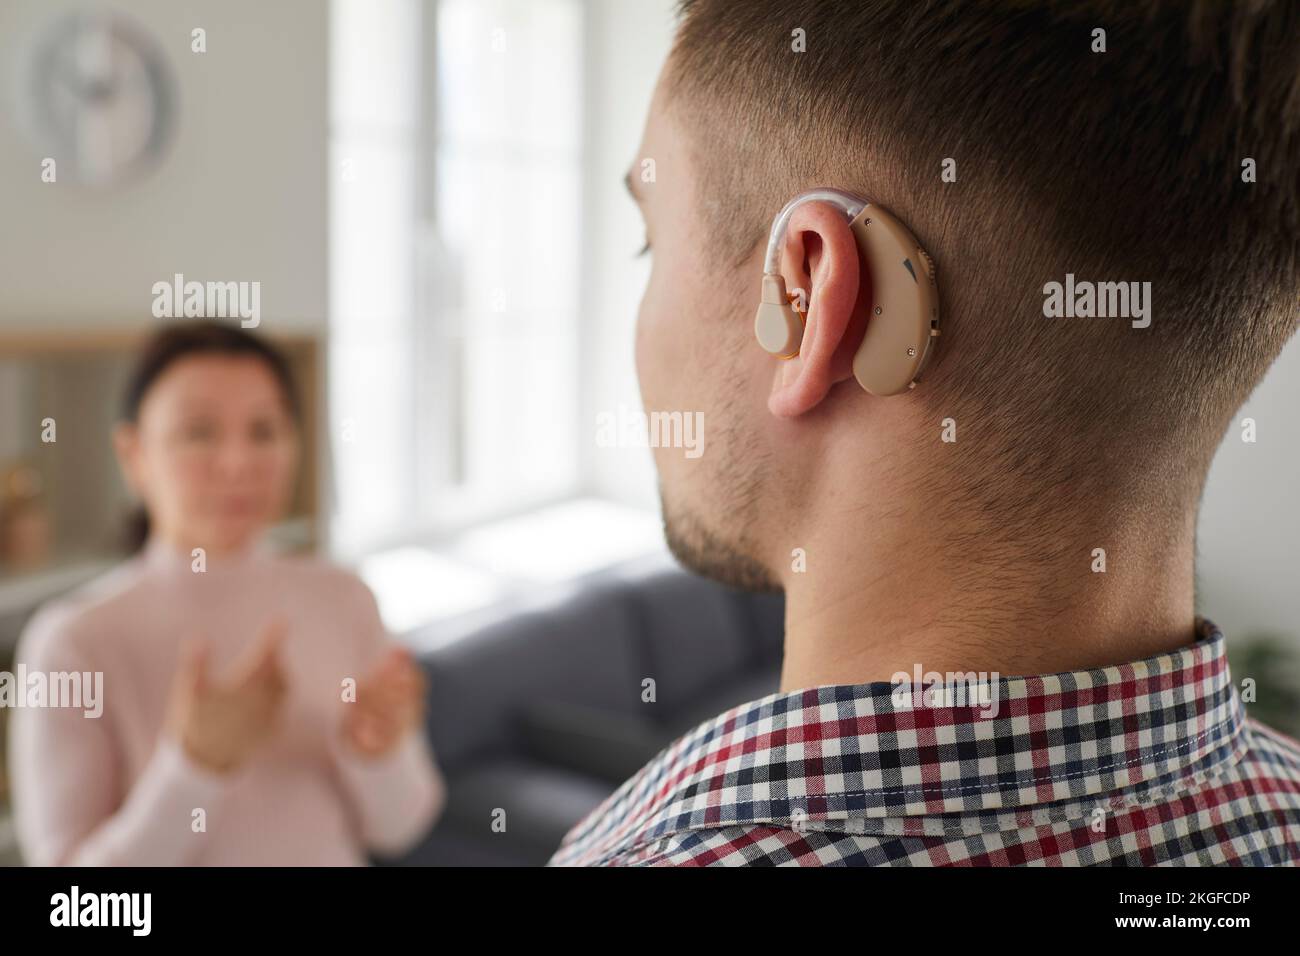 Joven sordo que usa un dispositivo auditivo en su oído comunicándose con otras personas Foto de stock